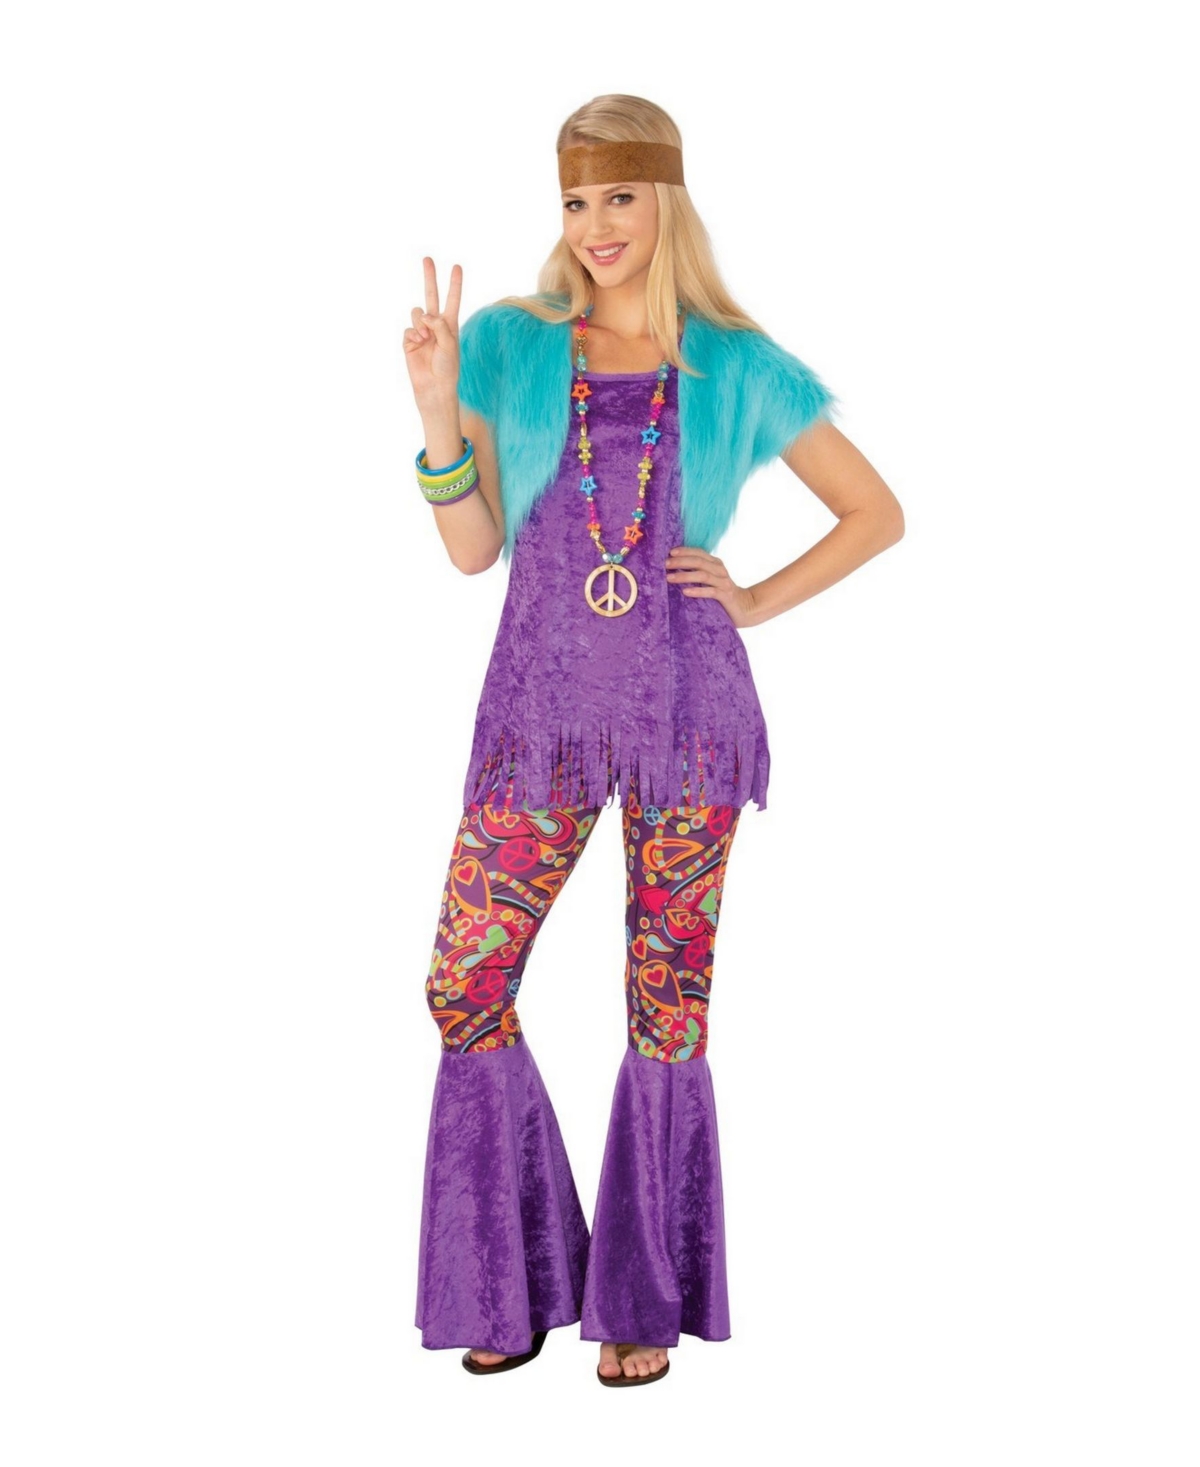 BuySeasons Women's Groovy Girl Adult Costume